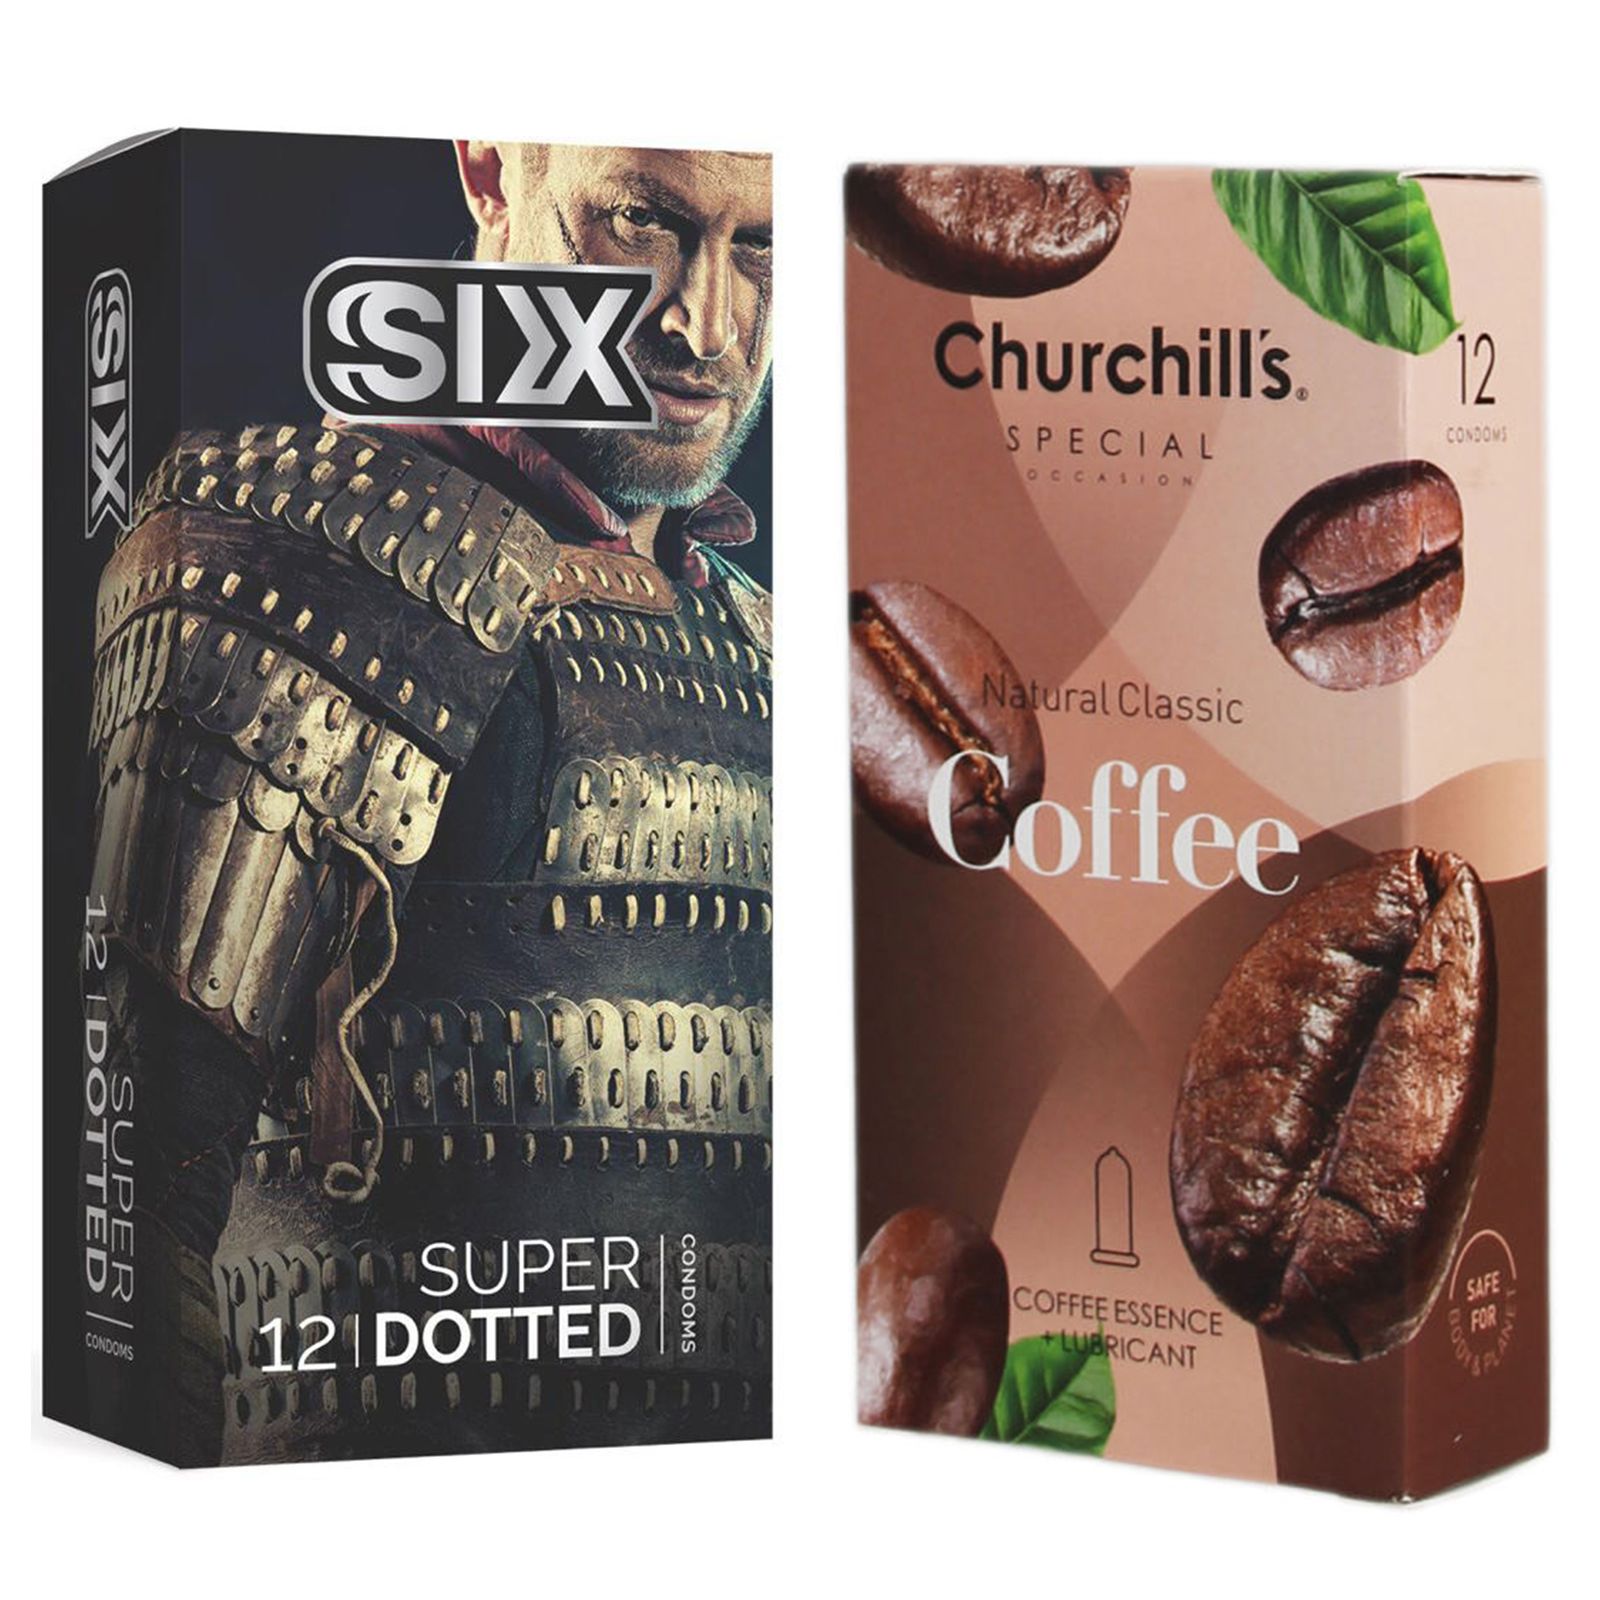 کاندوم چرچیلز مدل Coffee بسته 12 عددی به همراه کاندوم سیکس مدل خاردار بسته 12 عددی  -  - 1